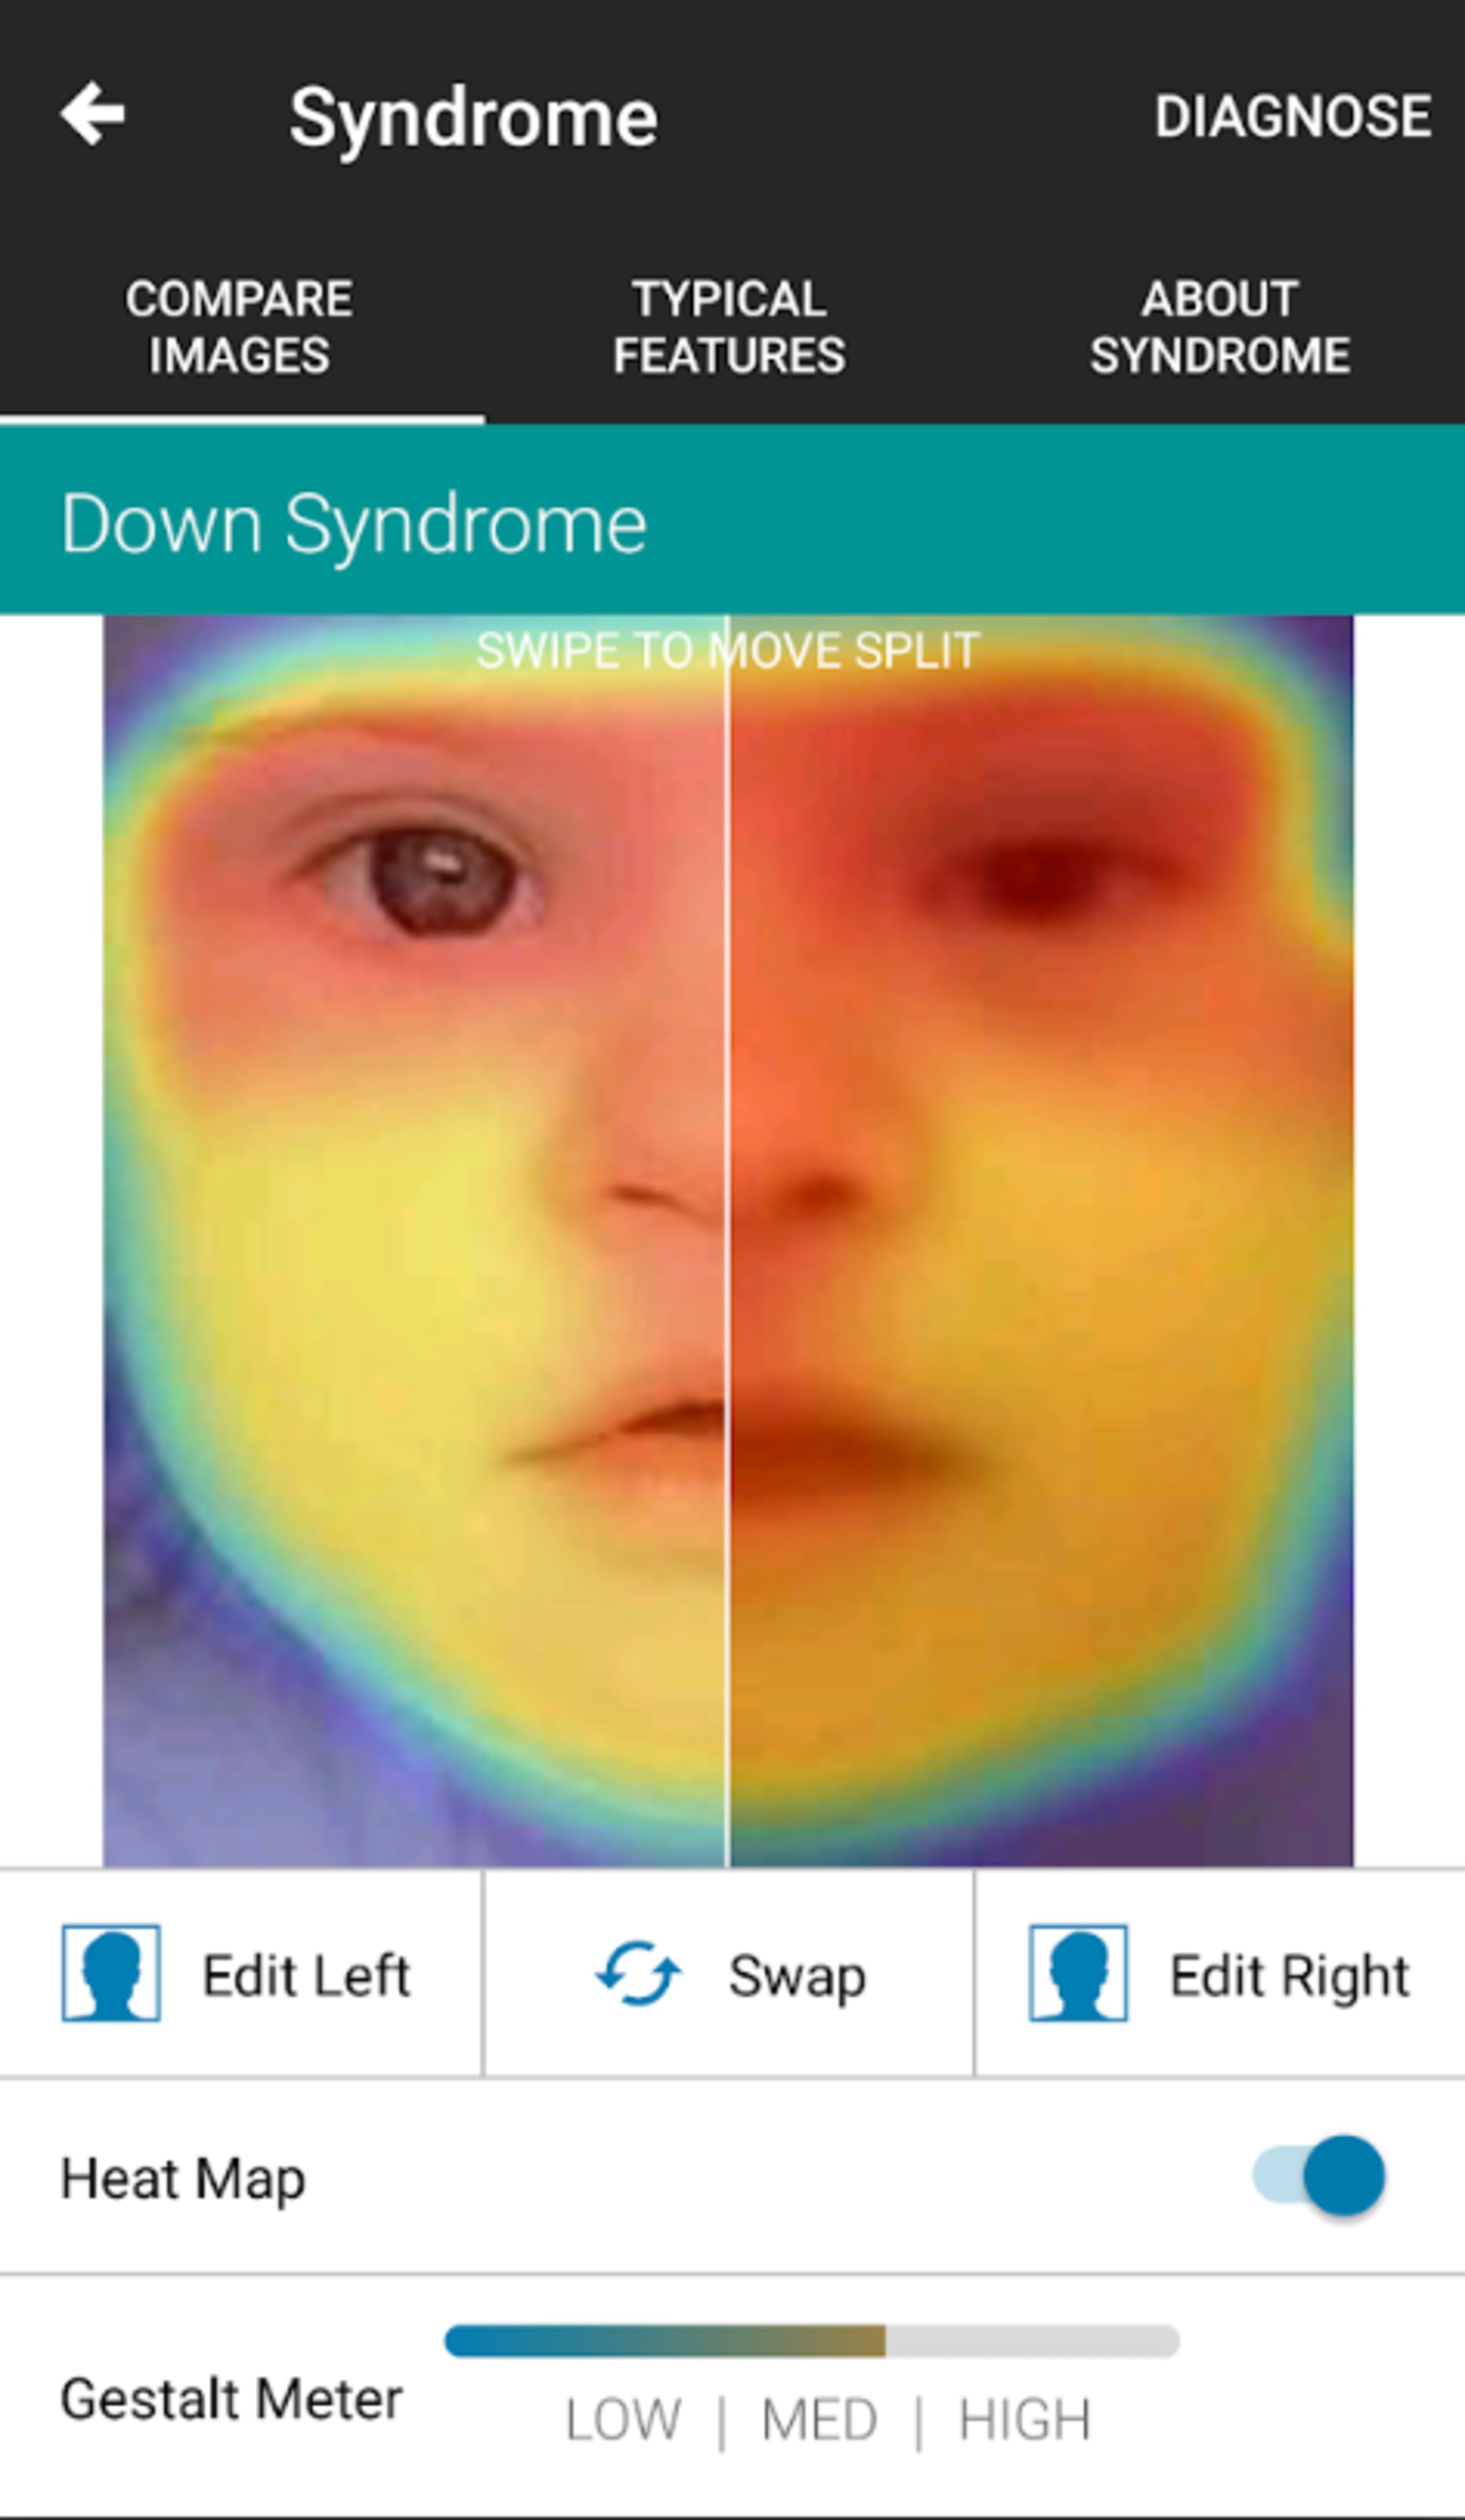 Die farblich markierten Bereiche im Gesicht sind die Stellen, anhand denen die künstliche Intelligenz das Vorliegen eines Syndroms zu erkennen glaubt. 